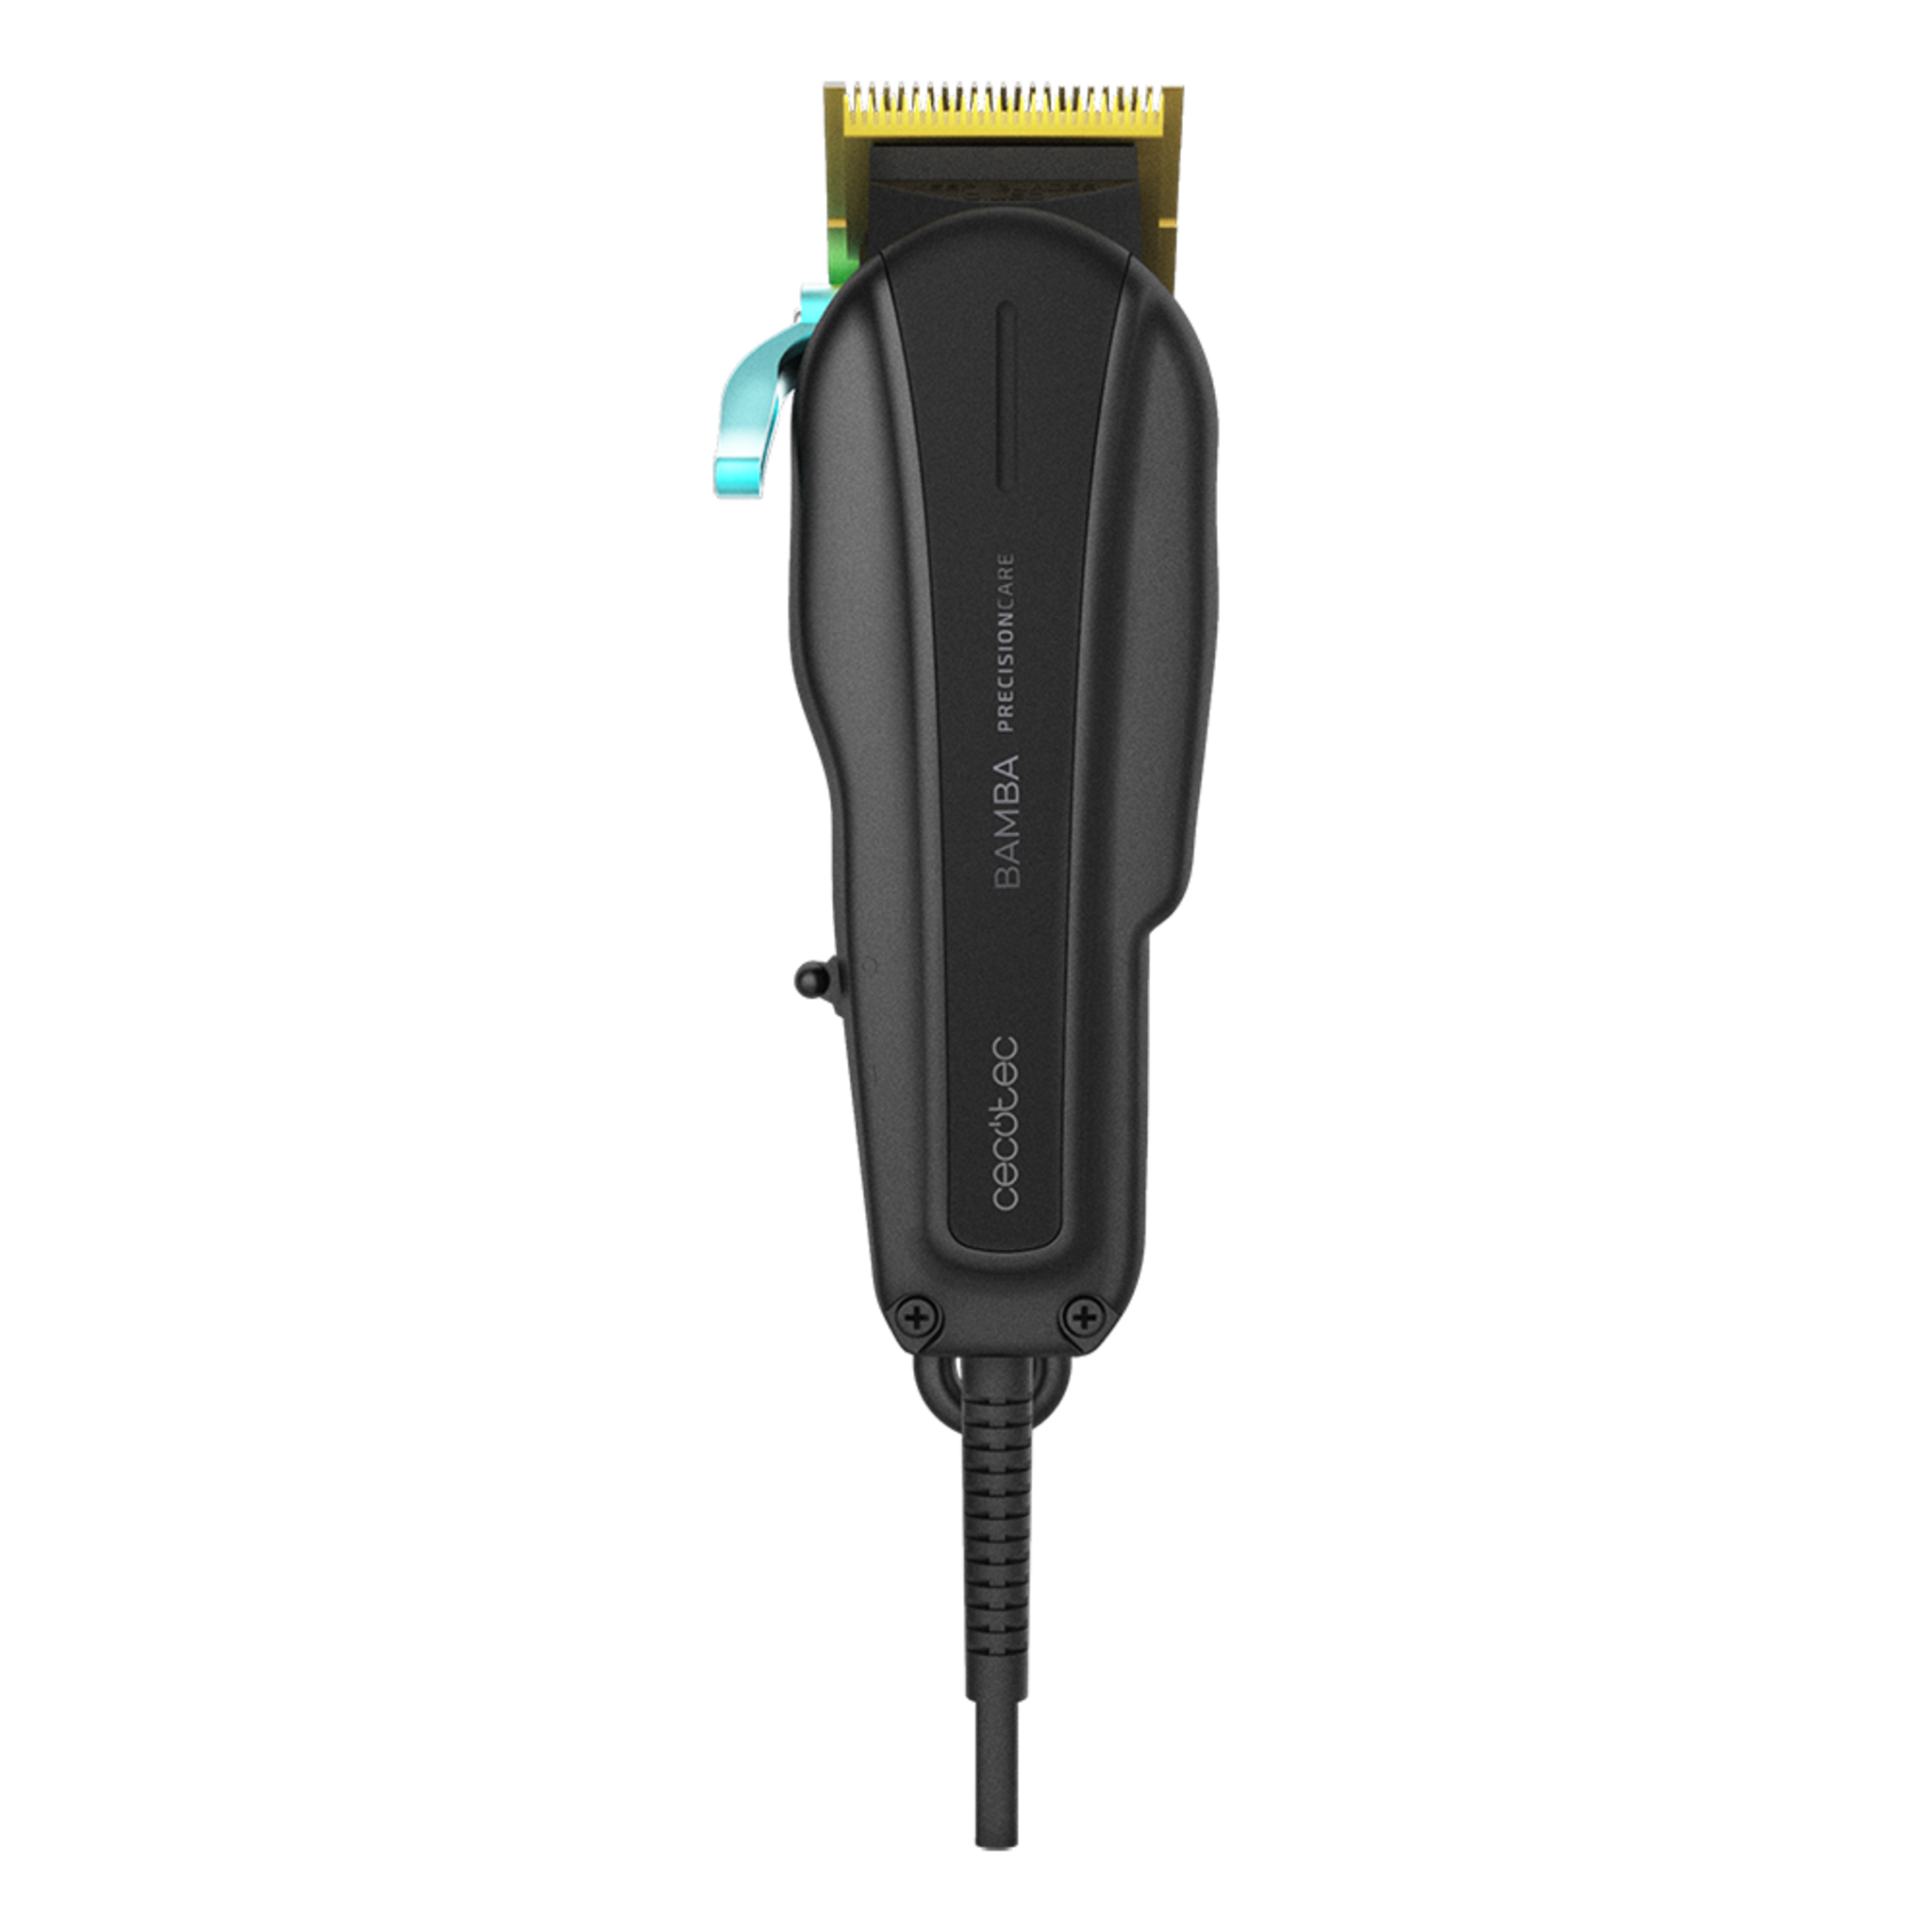 Tondeuse à cheveux Bamba PrecisionCare Pro Clipper Titanium. Tondeuse à cheveux professionnelle avec câble, lames revêtues en titane et 12 peignes